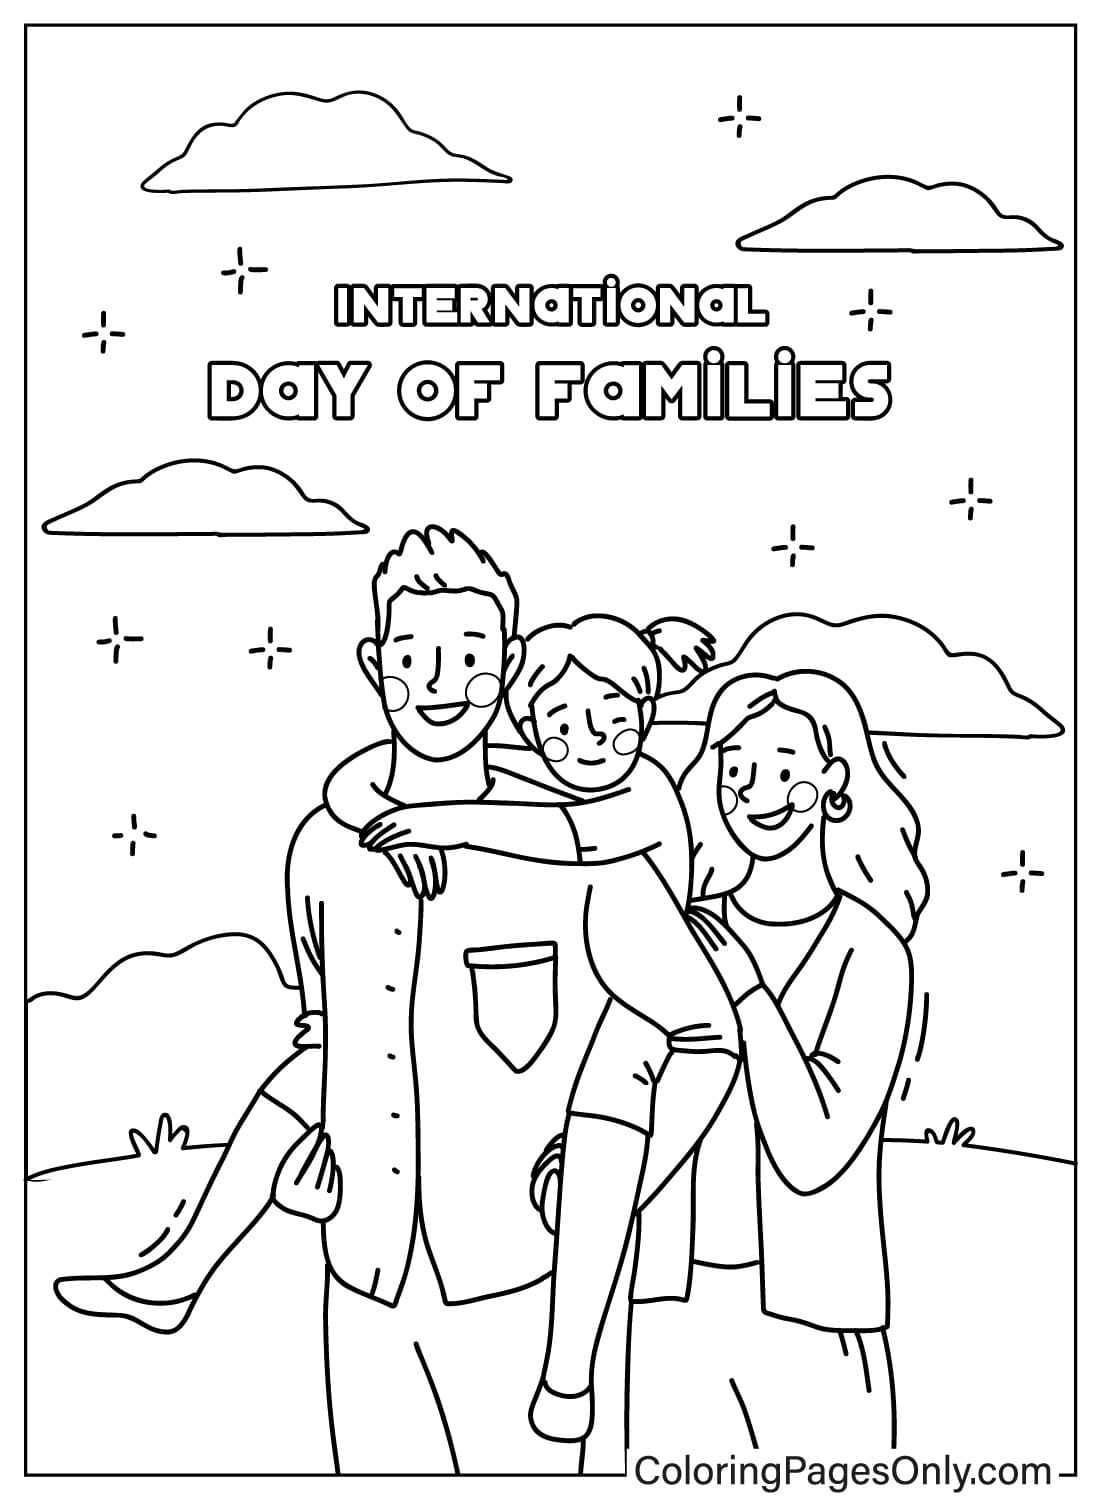 Journée internationale des familles - Feuille de coloriage de mai pour les enfants de mai